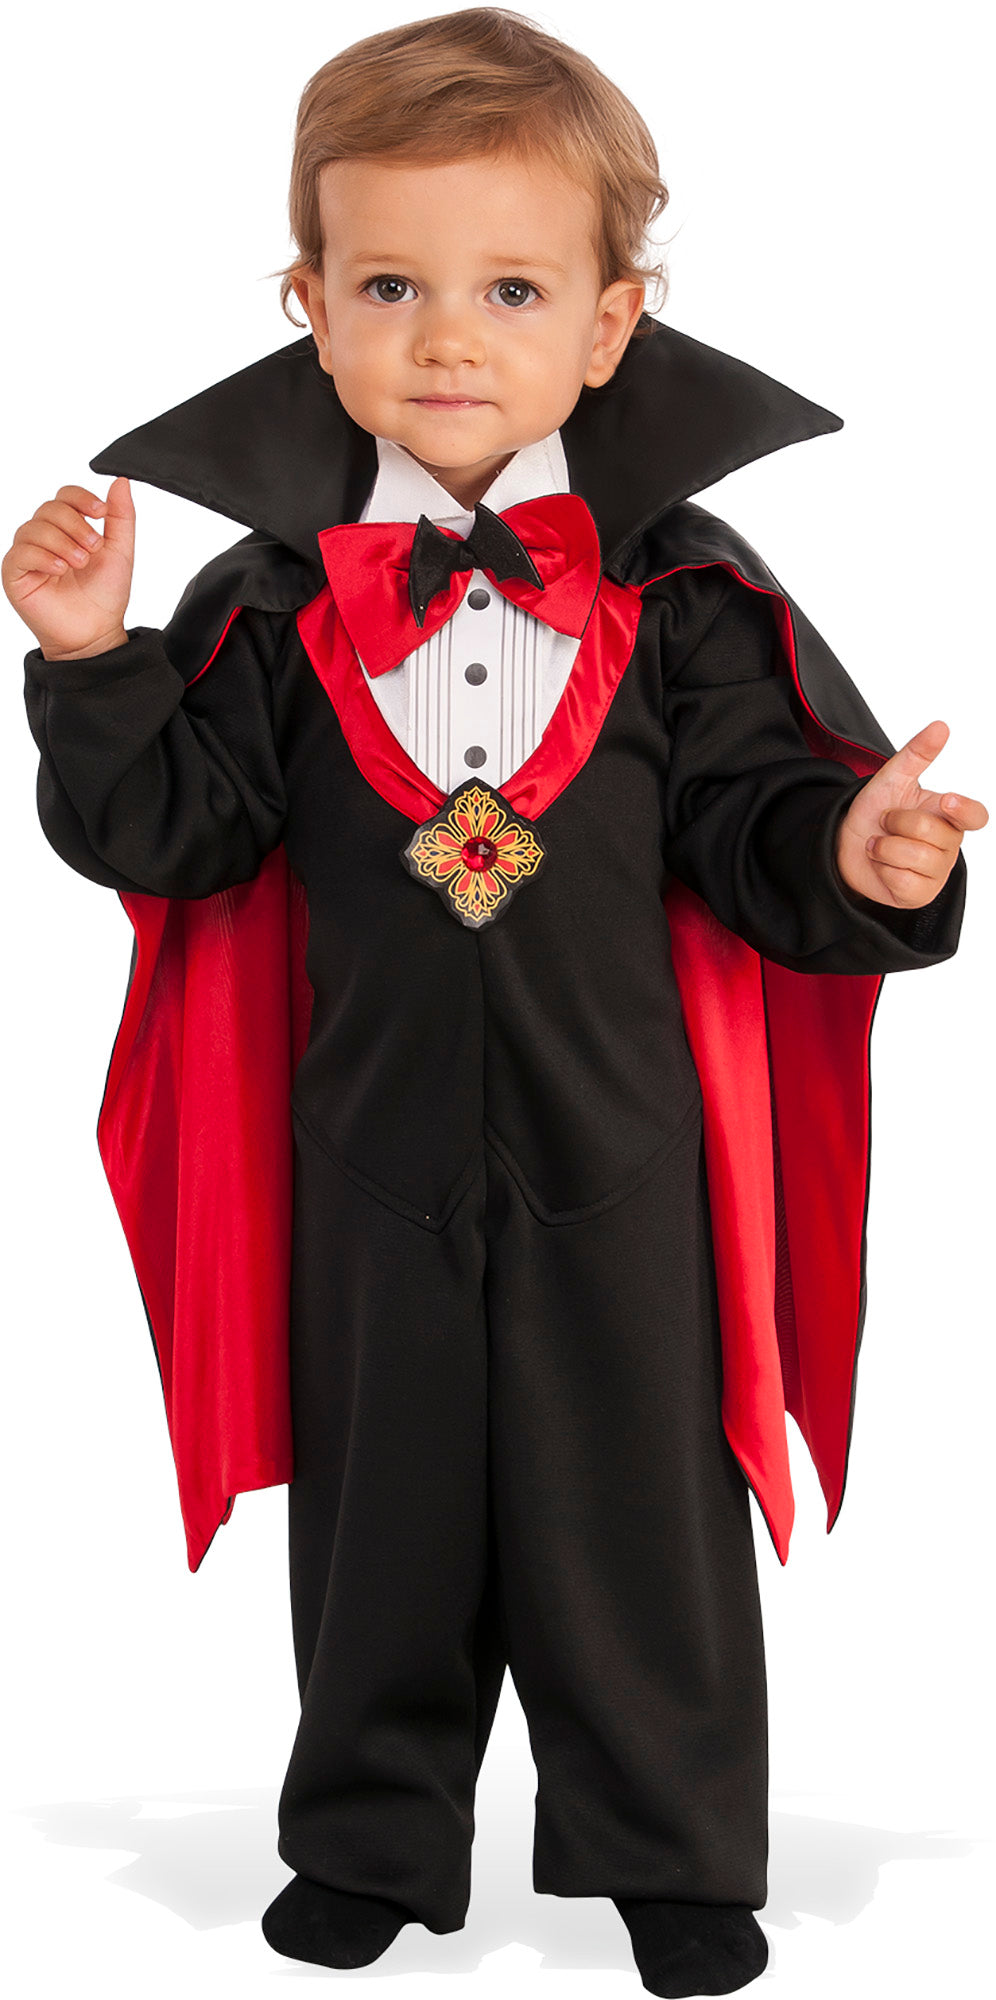 Dapper Dracula Costume